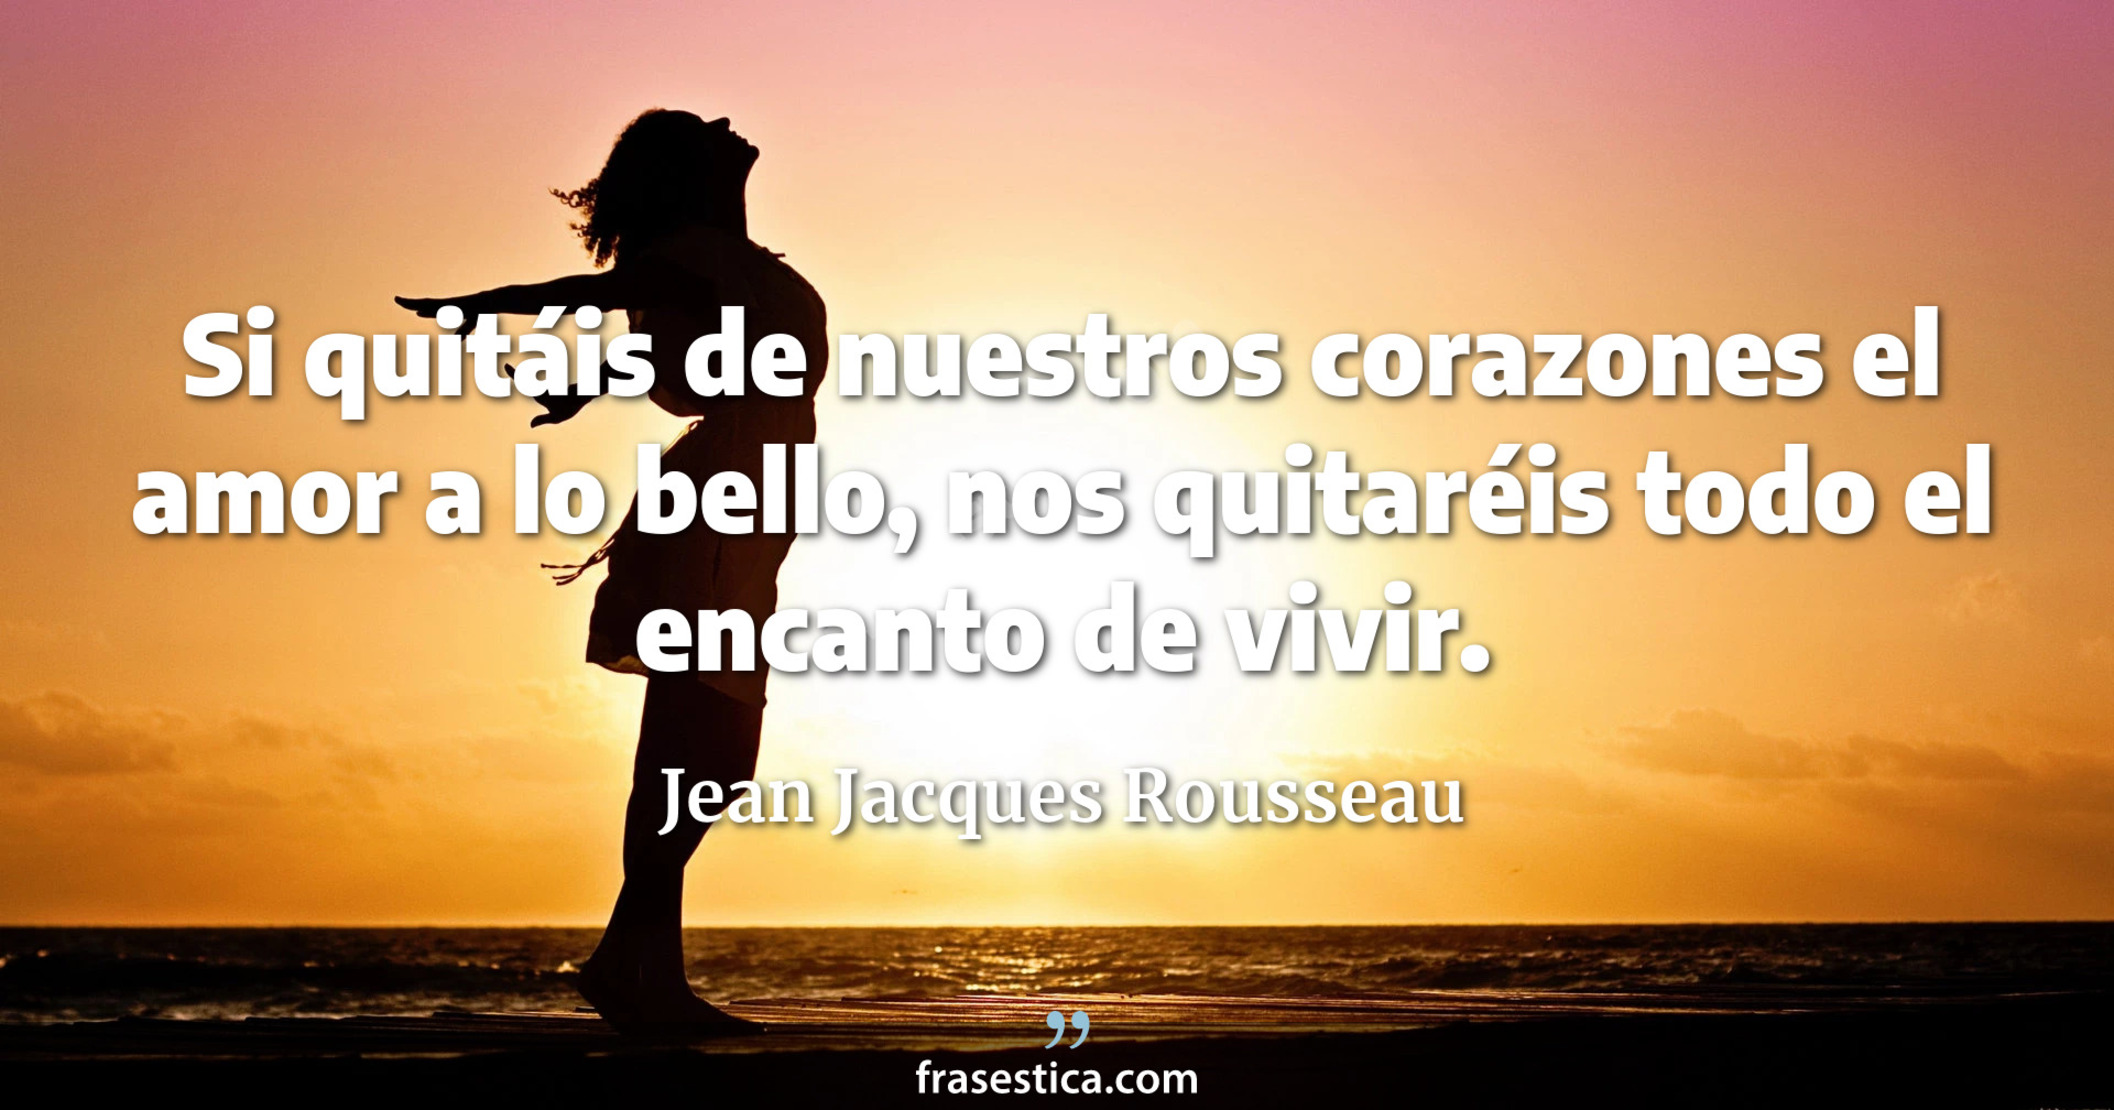 Si quitáis de nuestros corazones el amor a lo bello, nos quitaréis todo el encanto de vivir. - Jean Jacques Rousseau